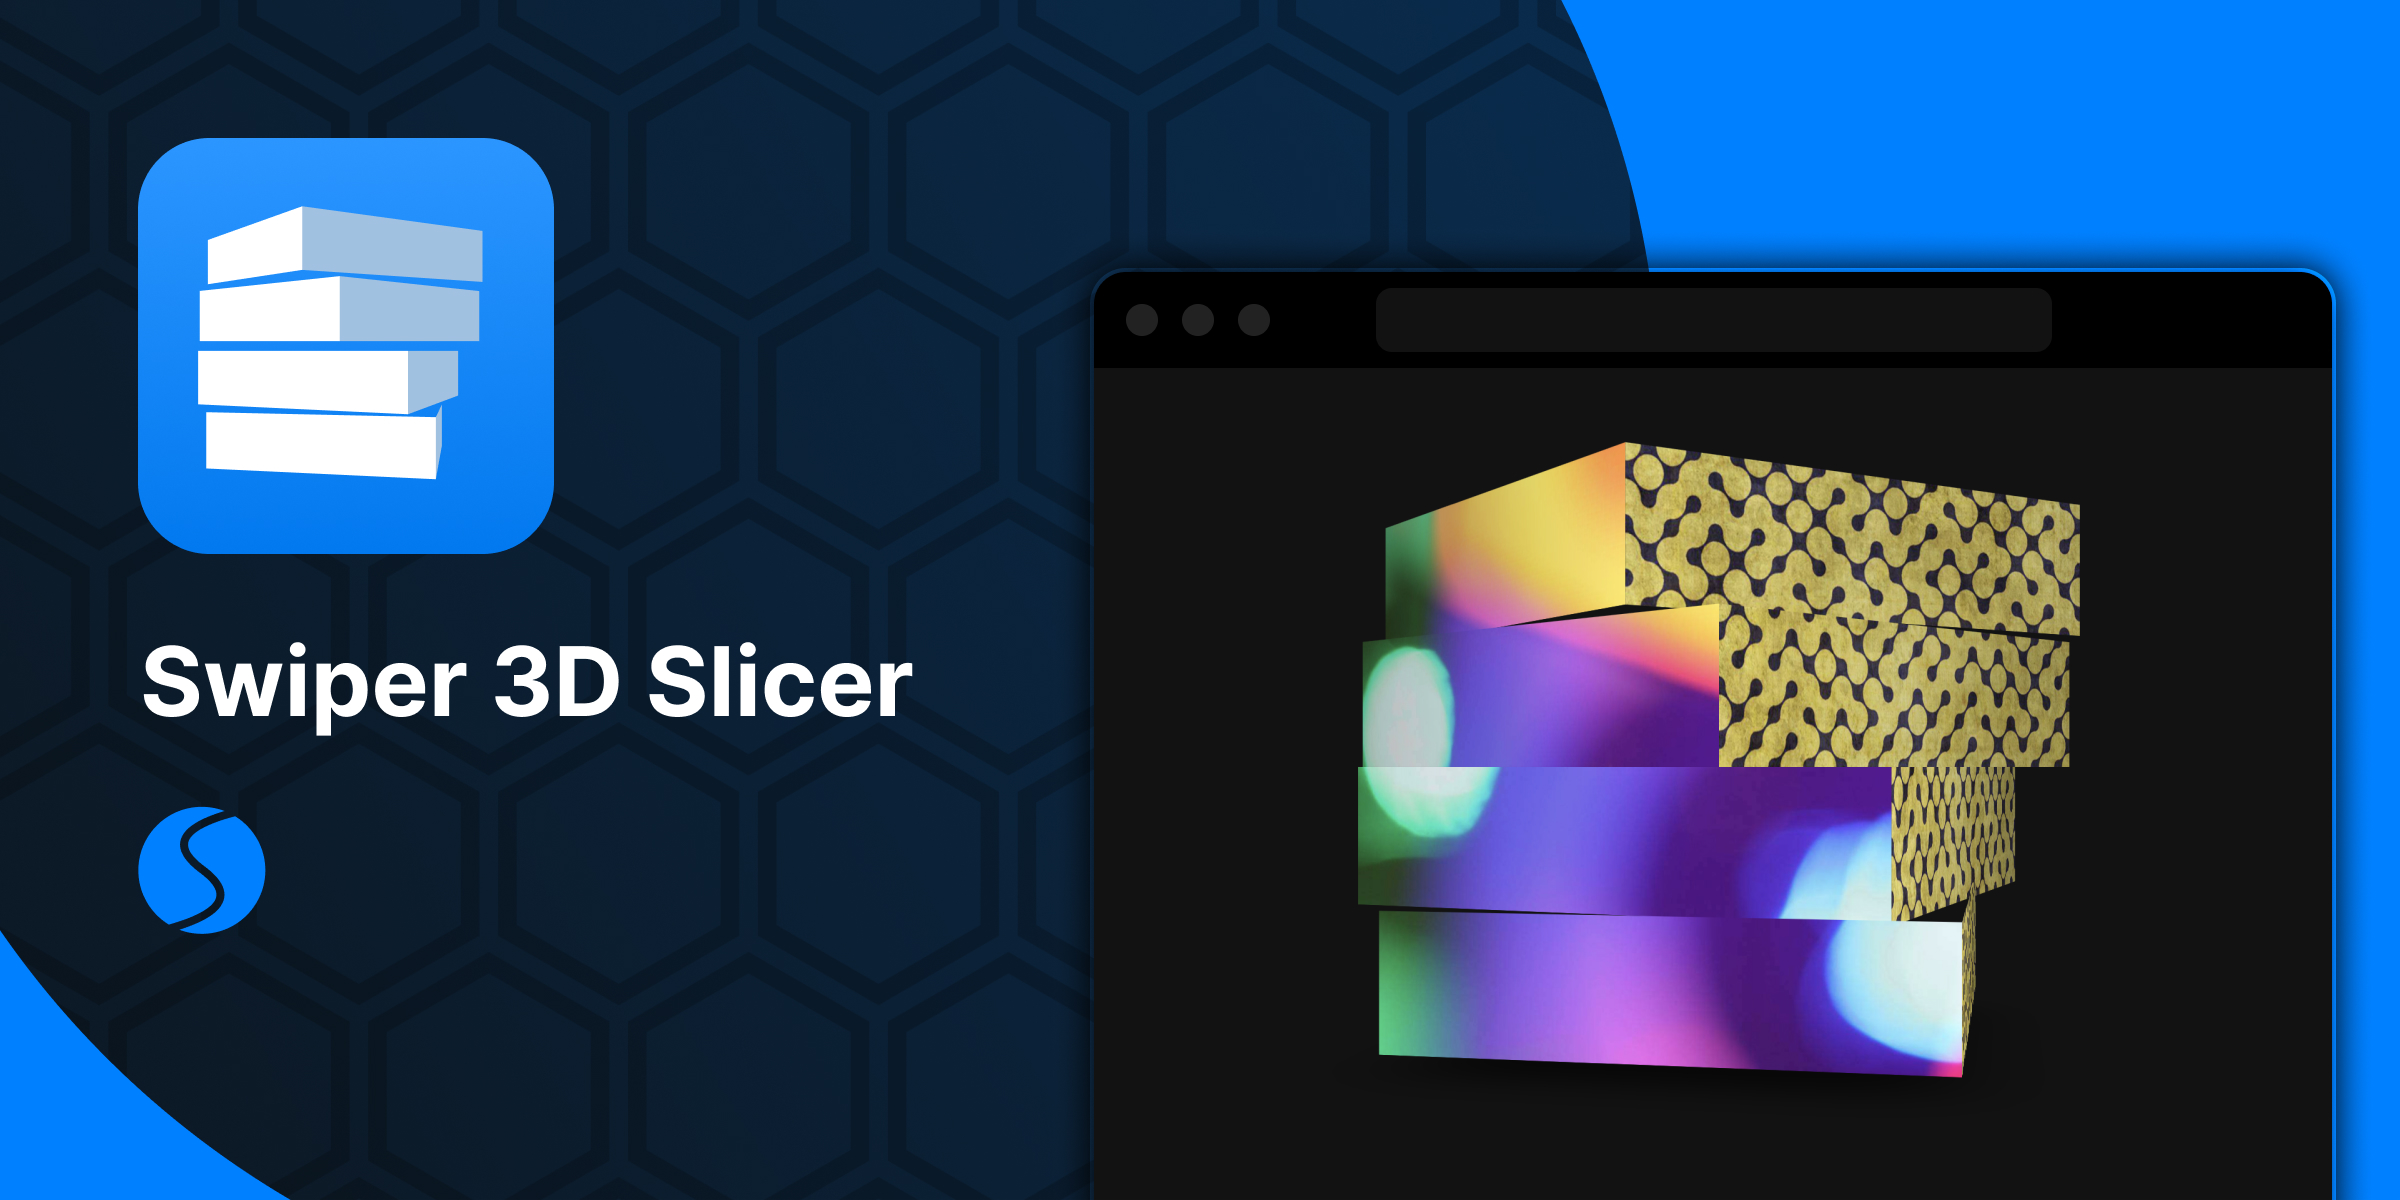 Swiper 3D Slicer